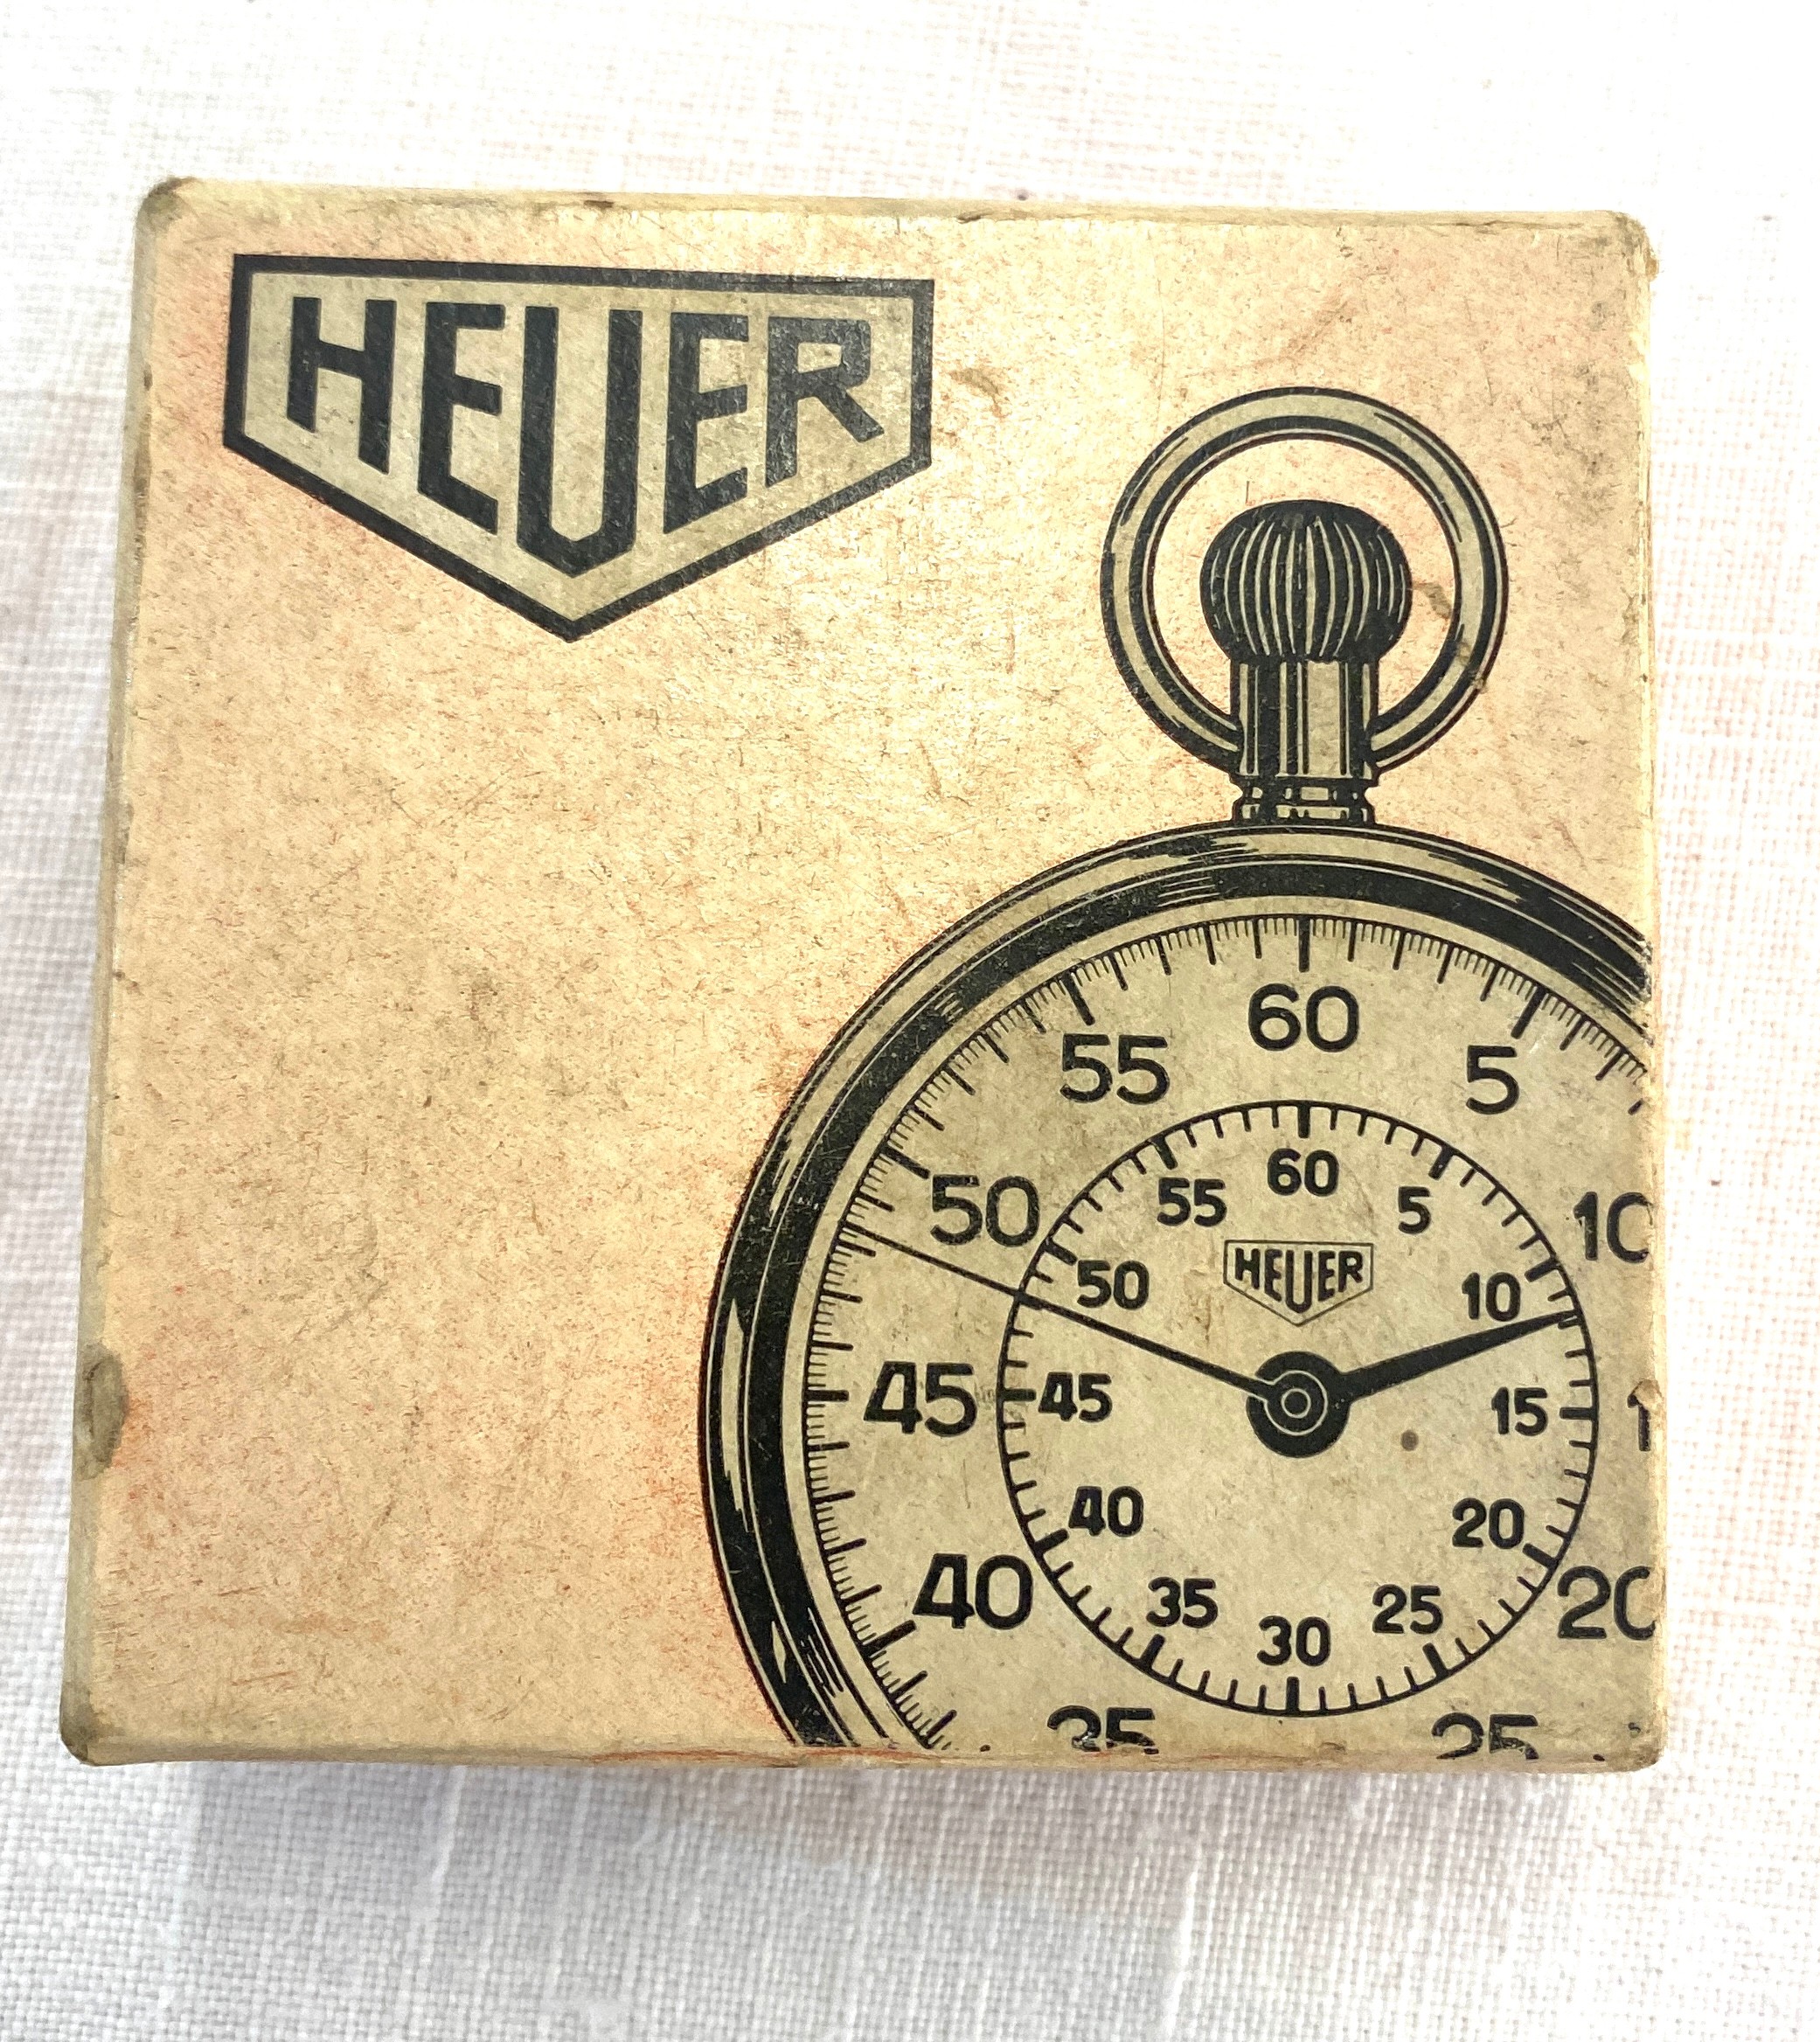 Cased heuer split second stopwatch, in original box - Image 2 of 4